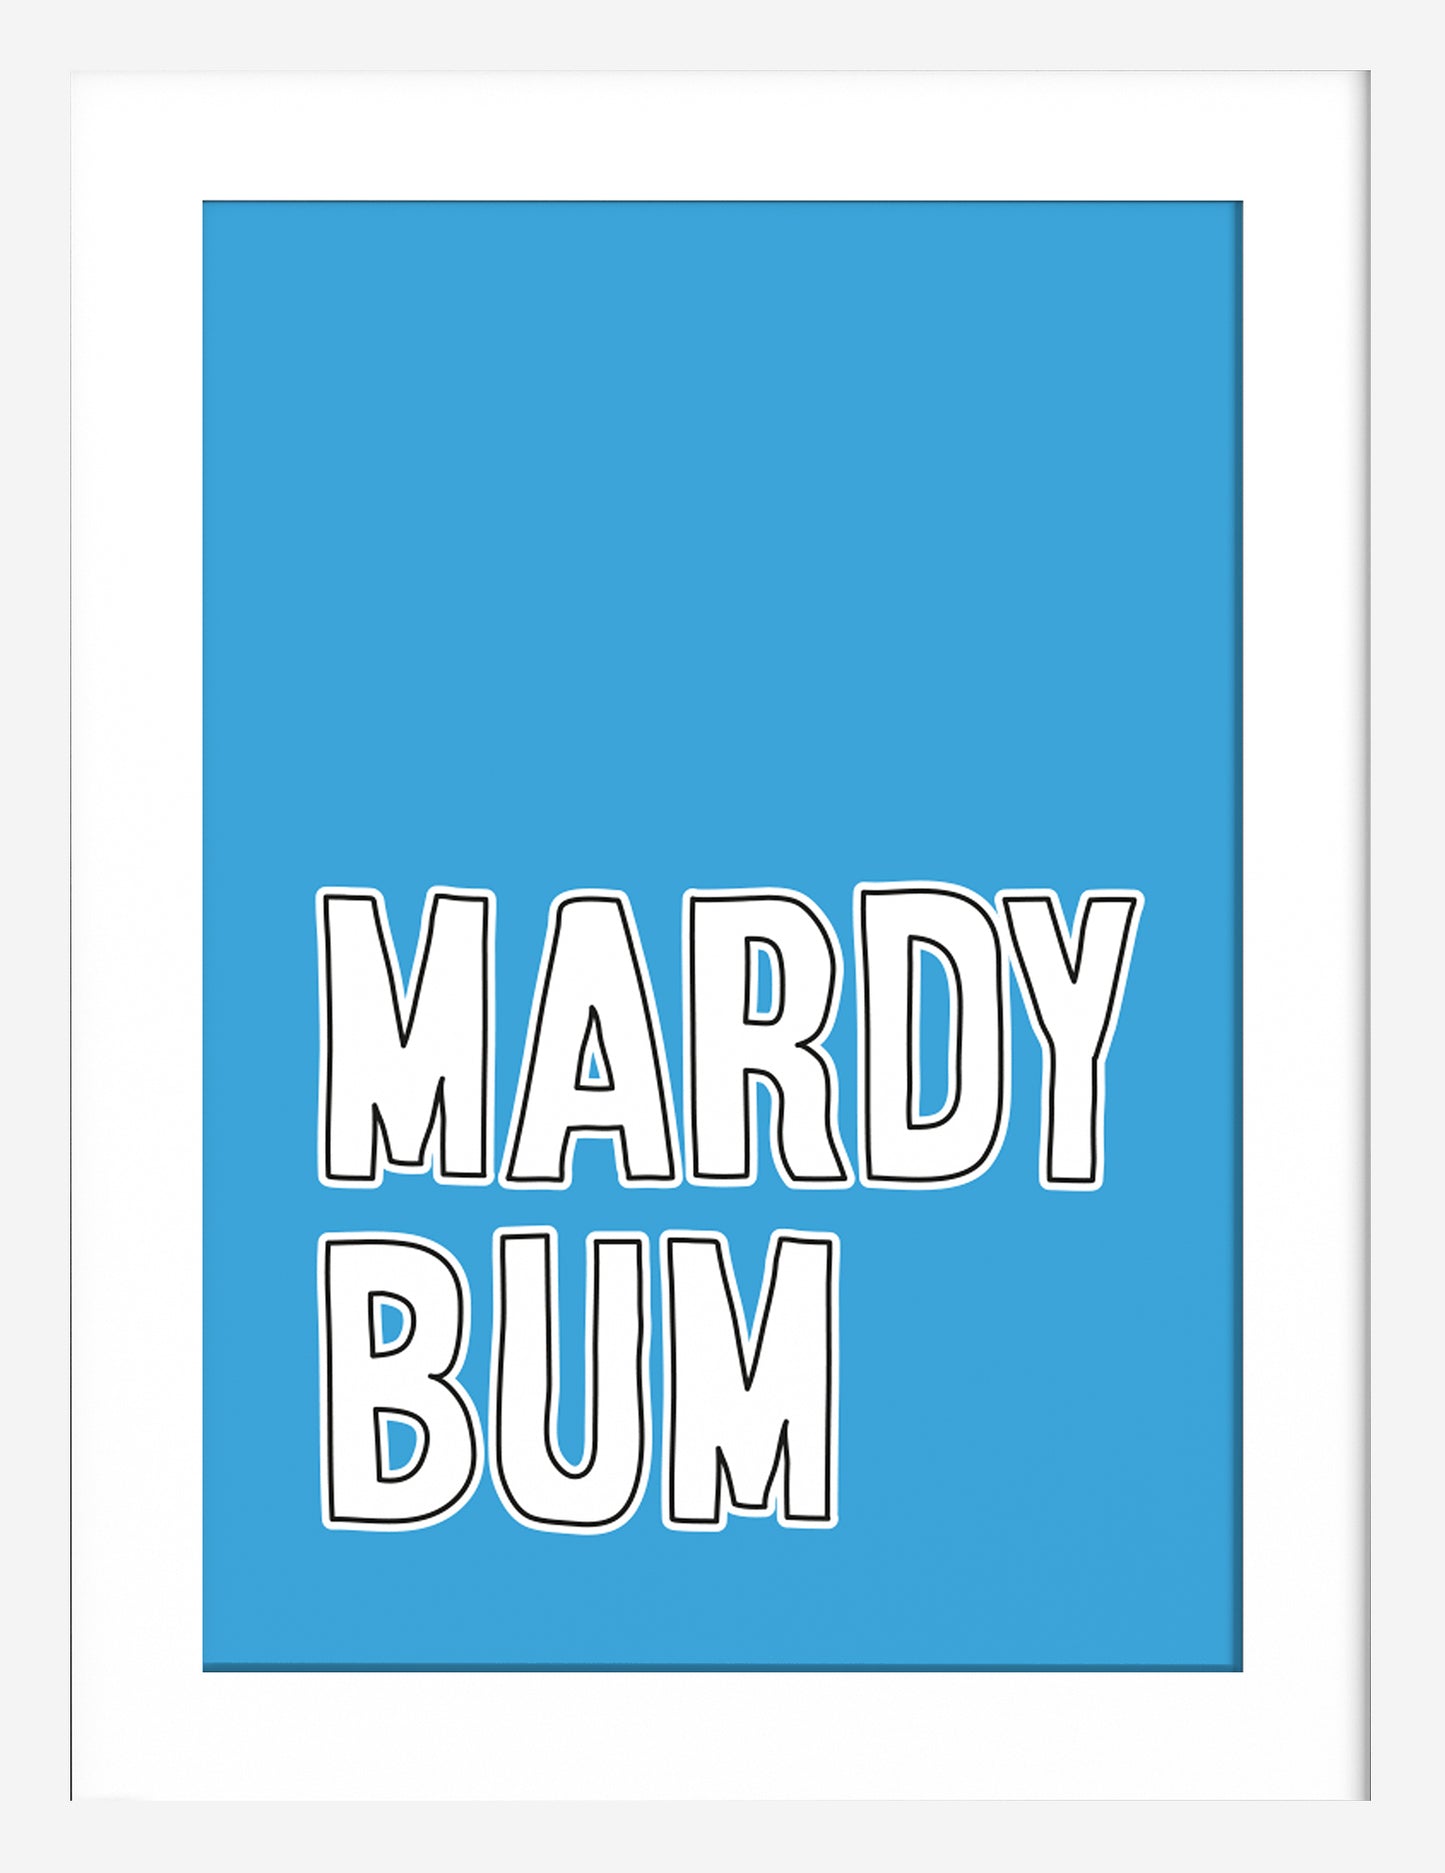 Mardy Bum